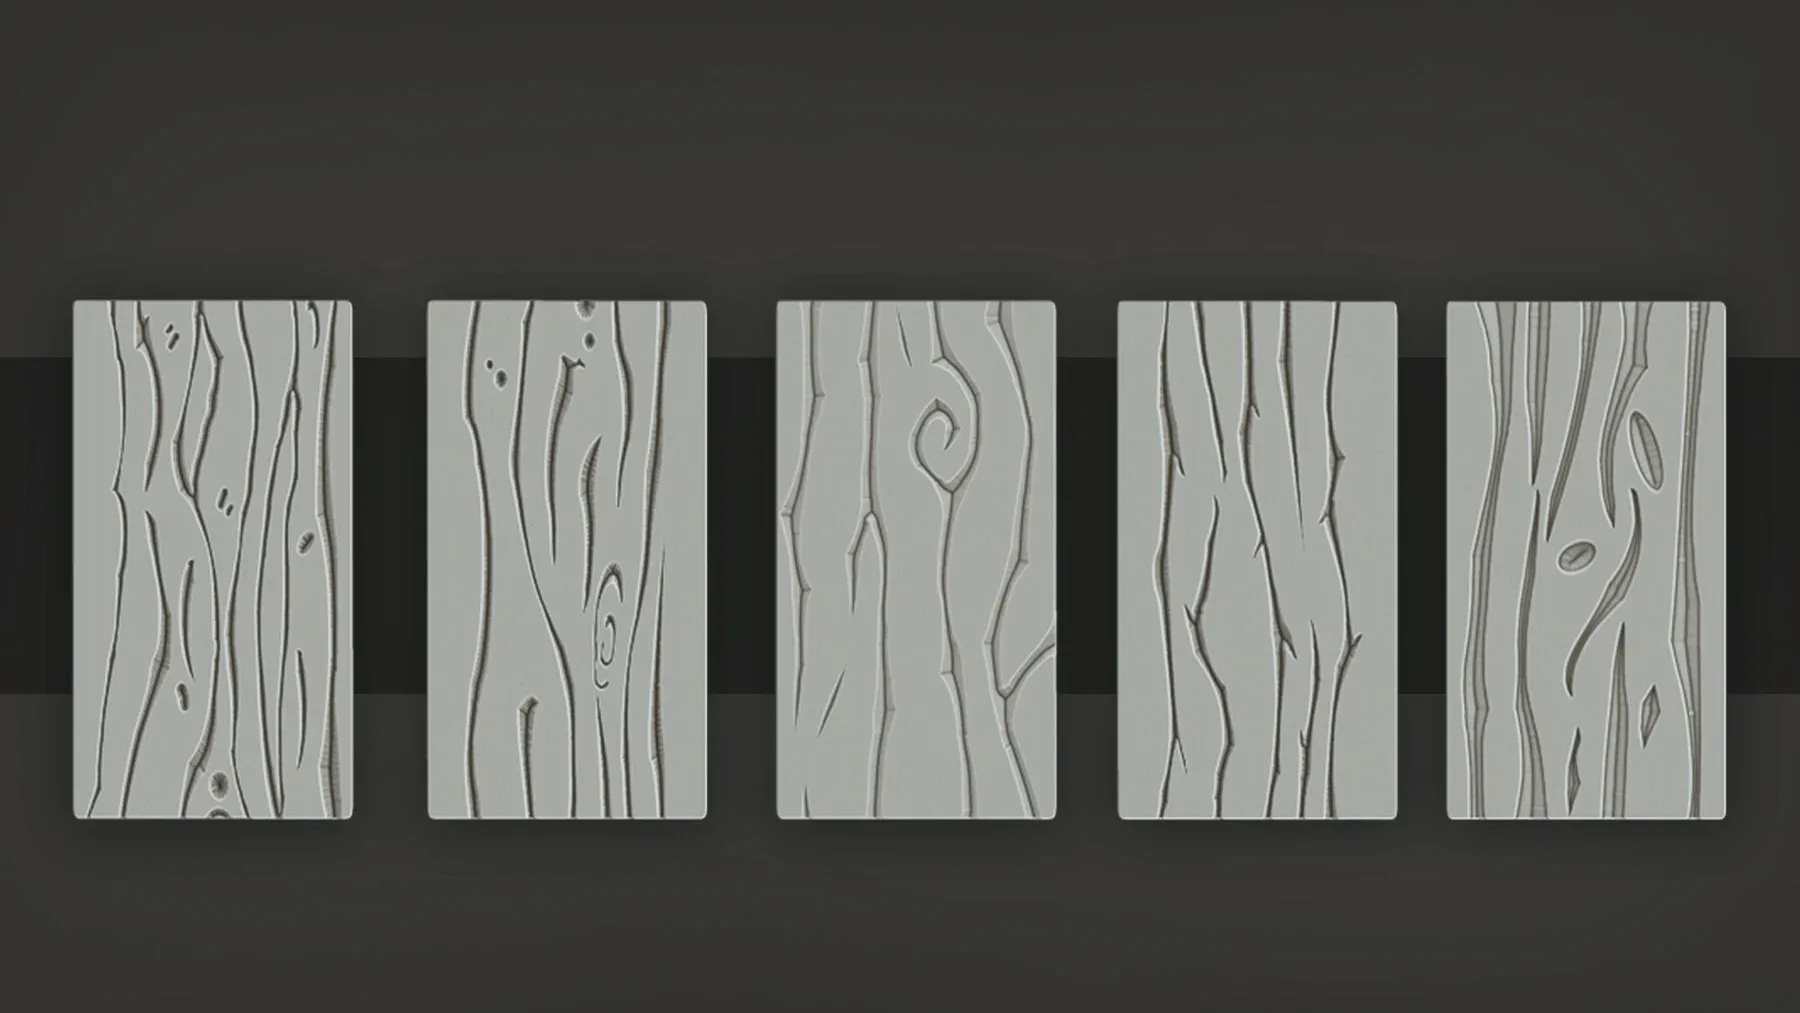 Stylized_Wood Patterns_2.0